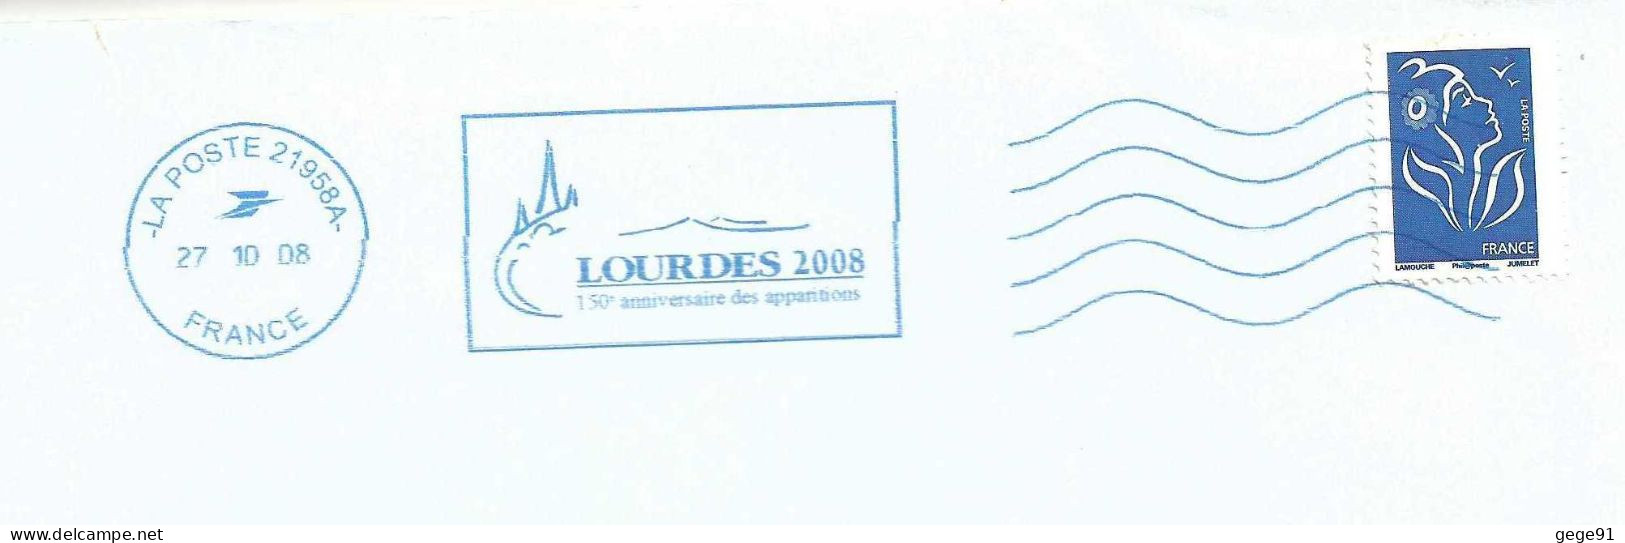 Oblitération Neopost Ijo85 De Lourdes - 150 Ans Des Apparitions - Enveloppe Réduite 220x110 - Mechanical Postmarks (Advertisement)